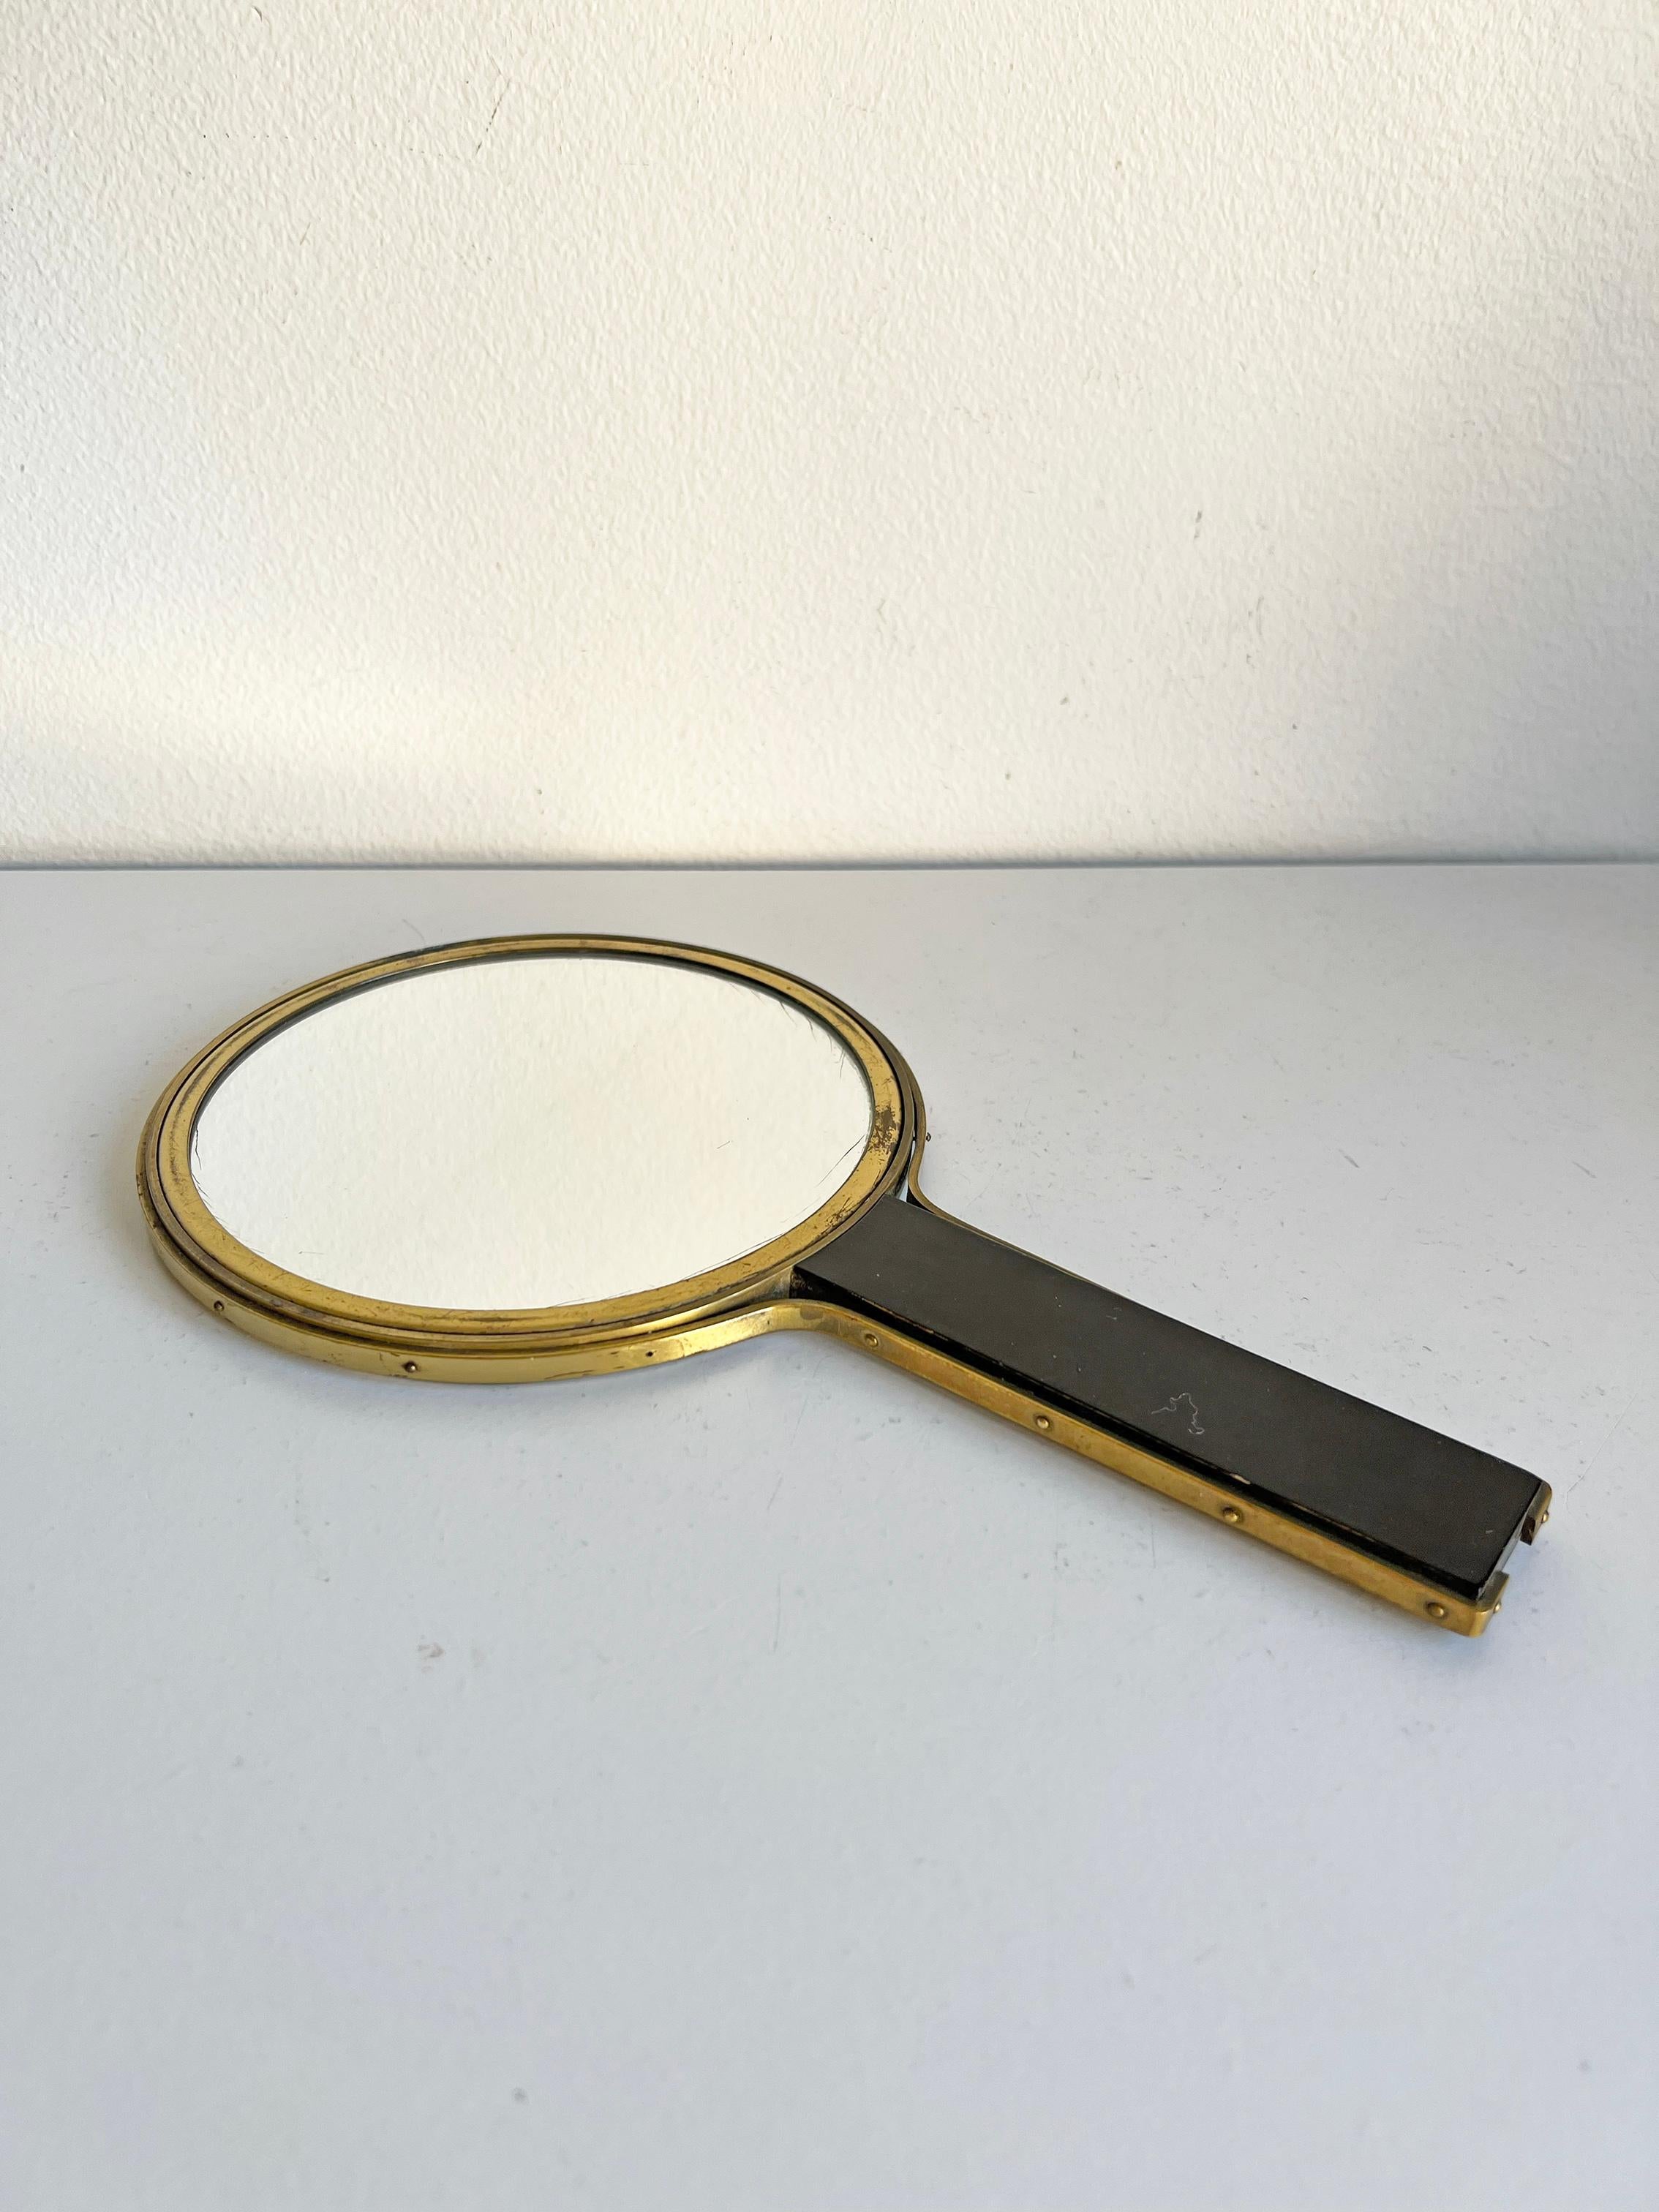 Rarissimo specchio bifacciale in ottone e legno attribuito a Ivar Ålenius Björk per Ystad Metall - 1939. 
Buone condizioni vintage, usura coerente con l'età e l'uso. Patina/usura dei componenti metallici adeguata all'età. Lo specchio stesso presenta